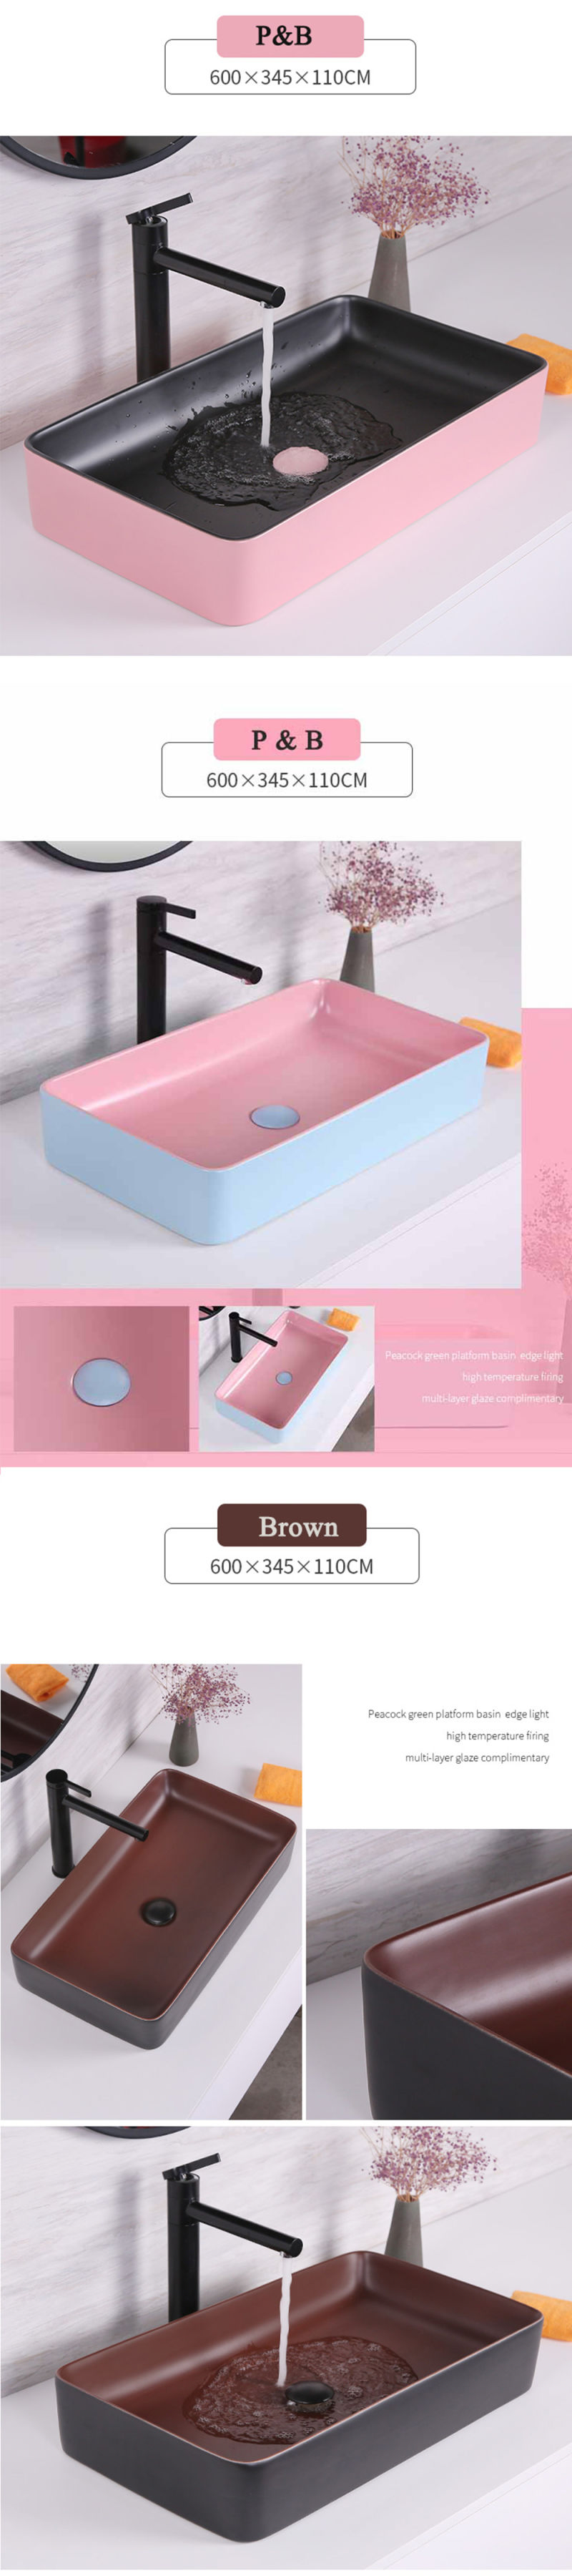 2020 New Design Bathroom Cabinet Ceramic Basin